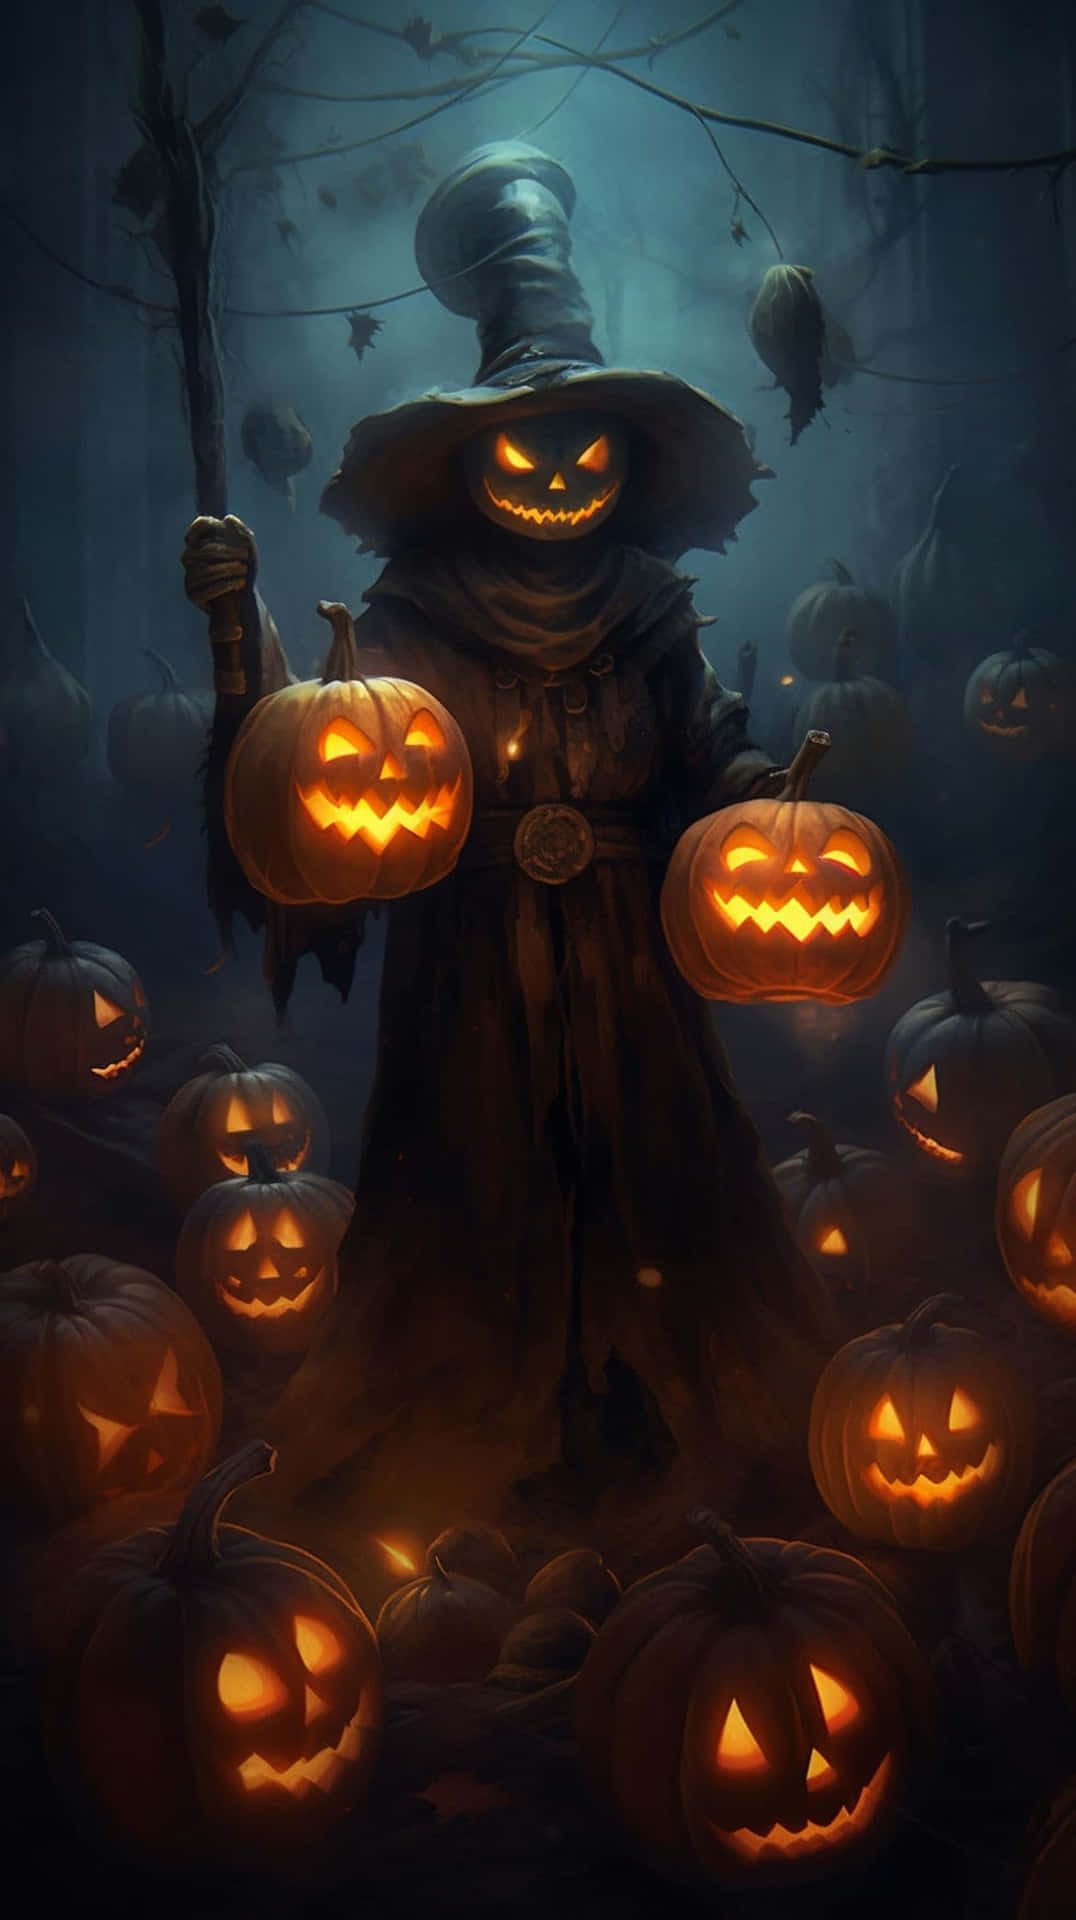 Pumpkin_ Harvester_ Halloween_ Artwork Wallpaper